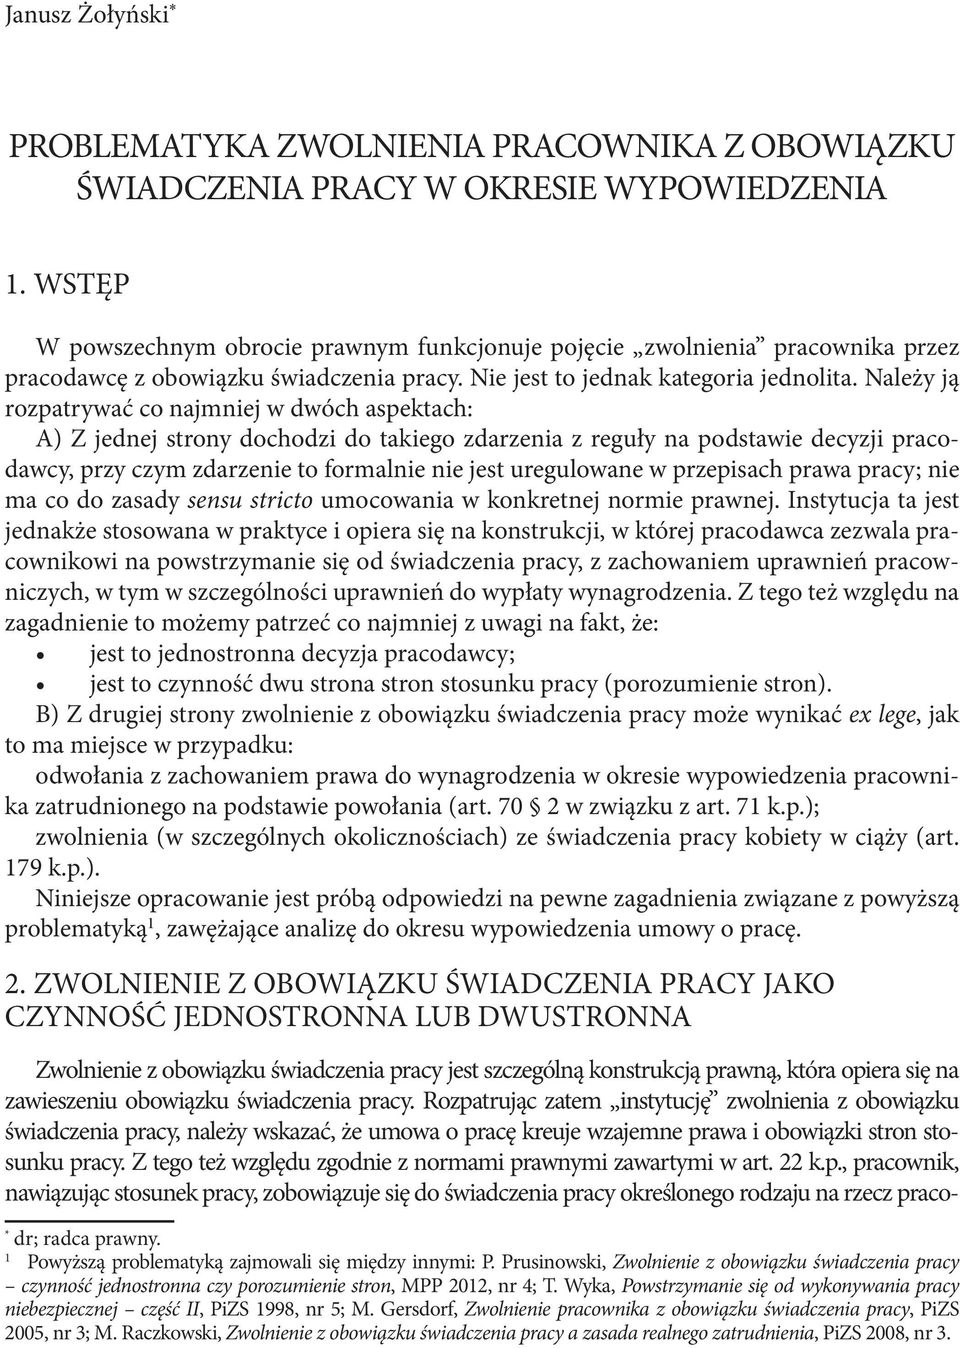 PROBLEMATYKA ZWOLNIENIA PRACOWNIKA Z OBOWIĄZKU ŚWIADCZENIA PRACY W OKRESIE  WYPOWIEDZENIA - PDF Free Download